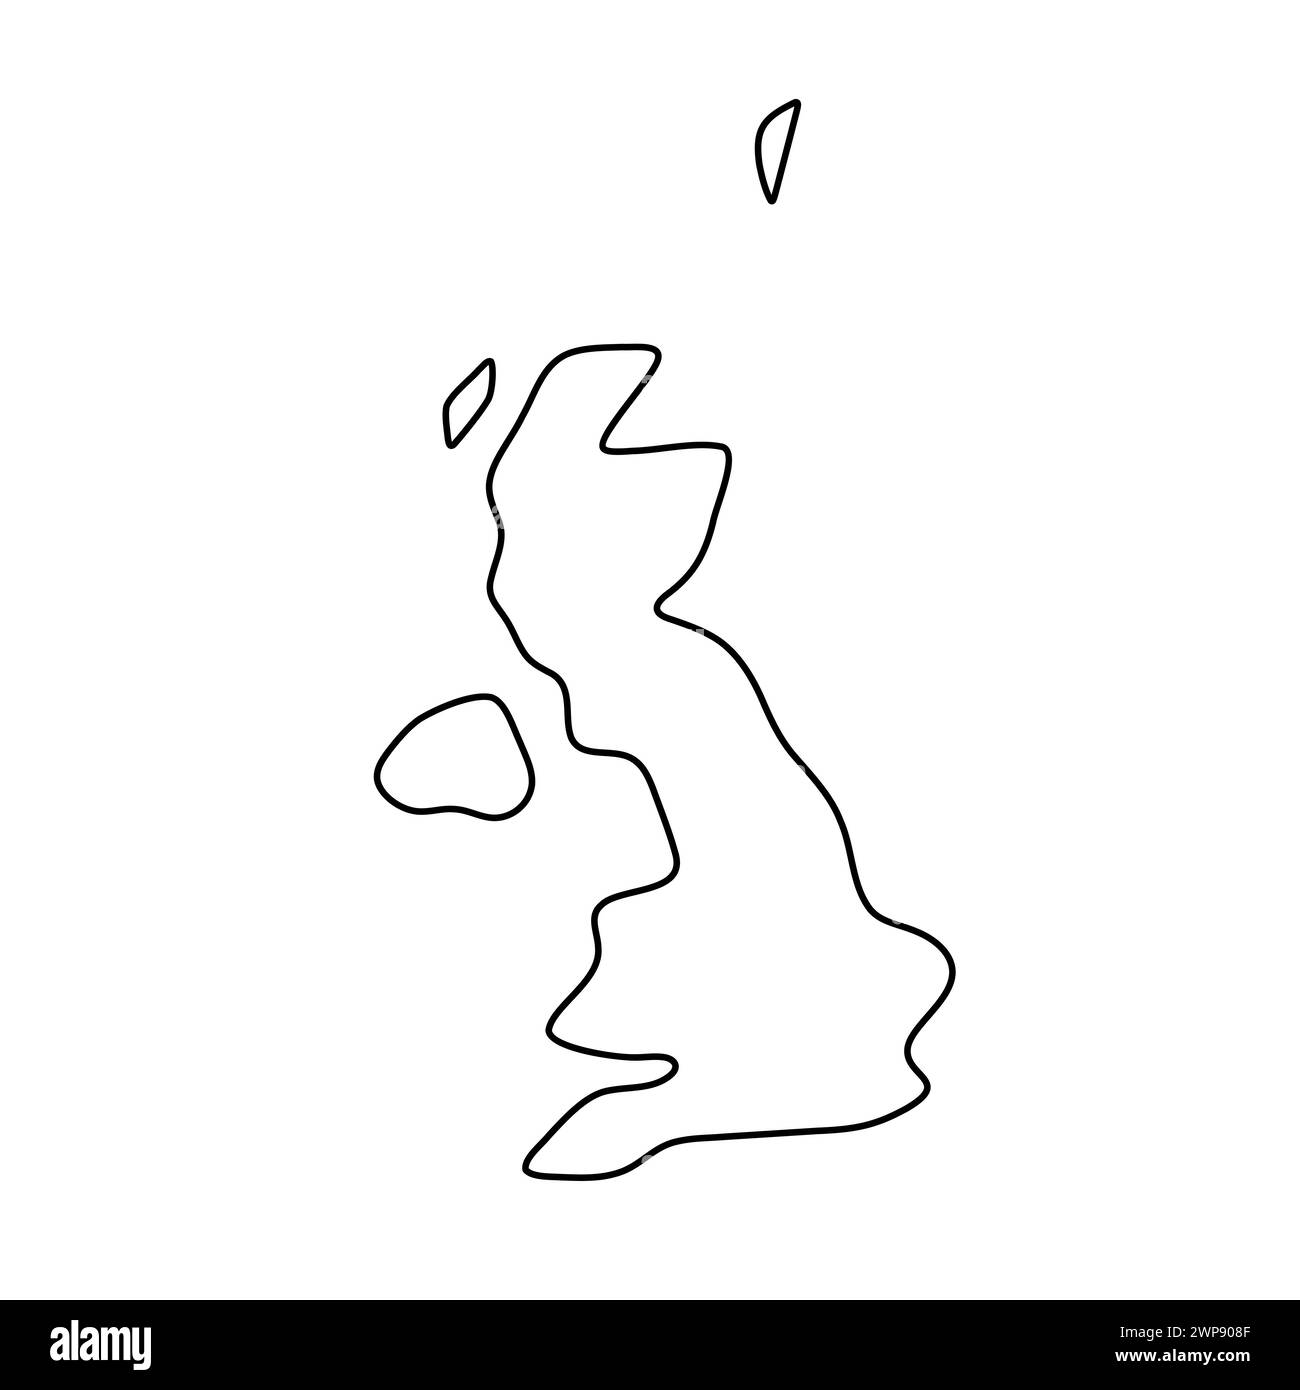 Vereinfachte Landkarte des Vereinigten Königreichs Großbritannien und Nordirland. Dünne schwarze Kontur. Einfaches Vektorsymbol Stock Vektor